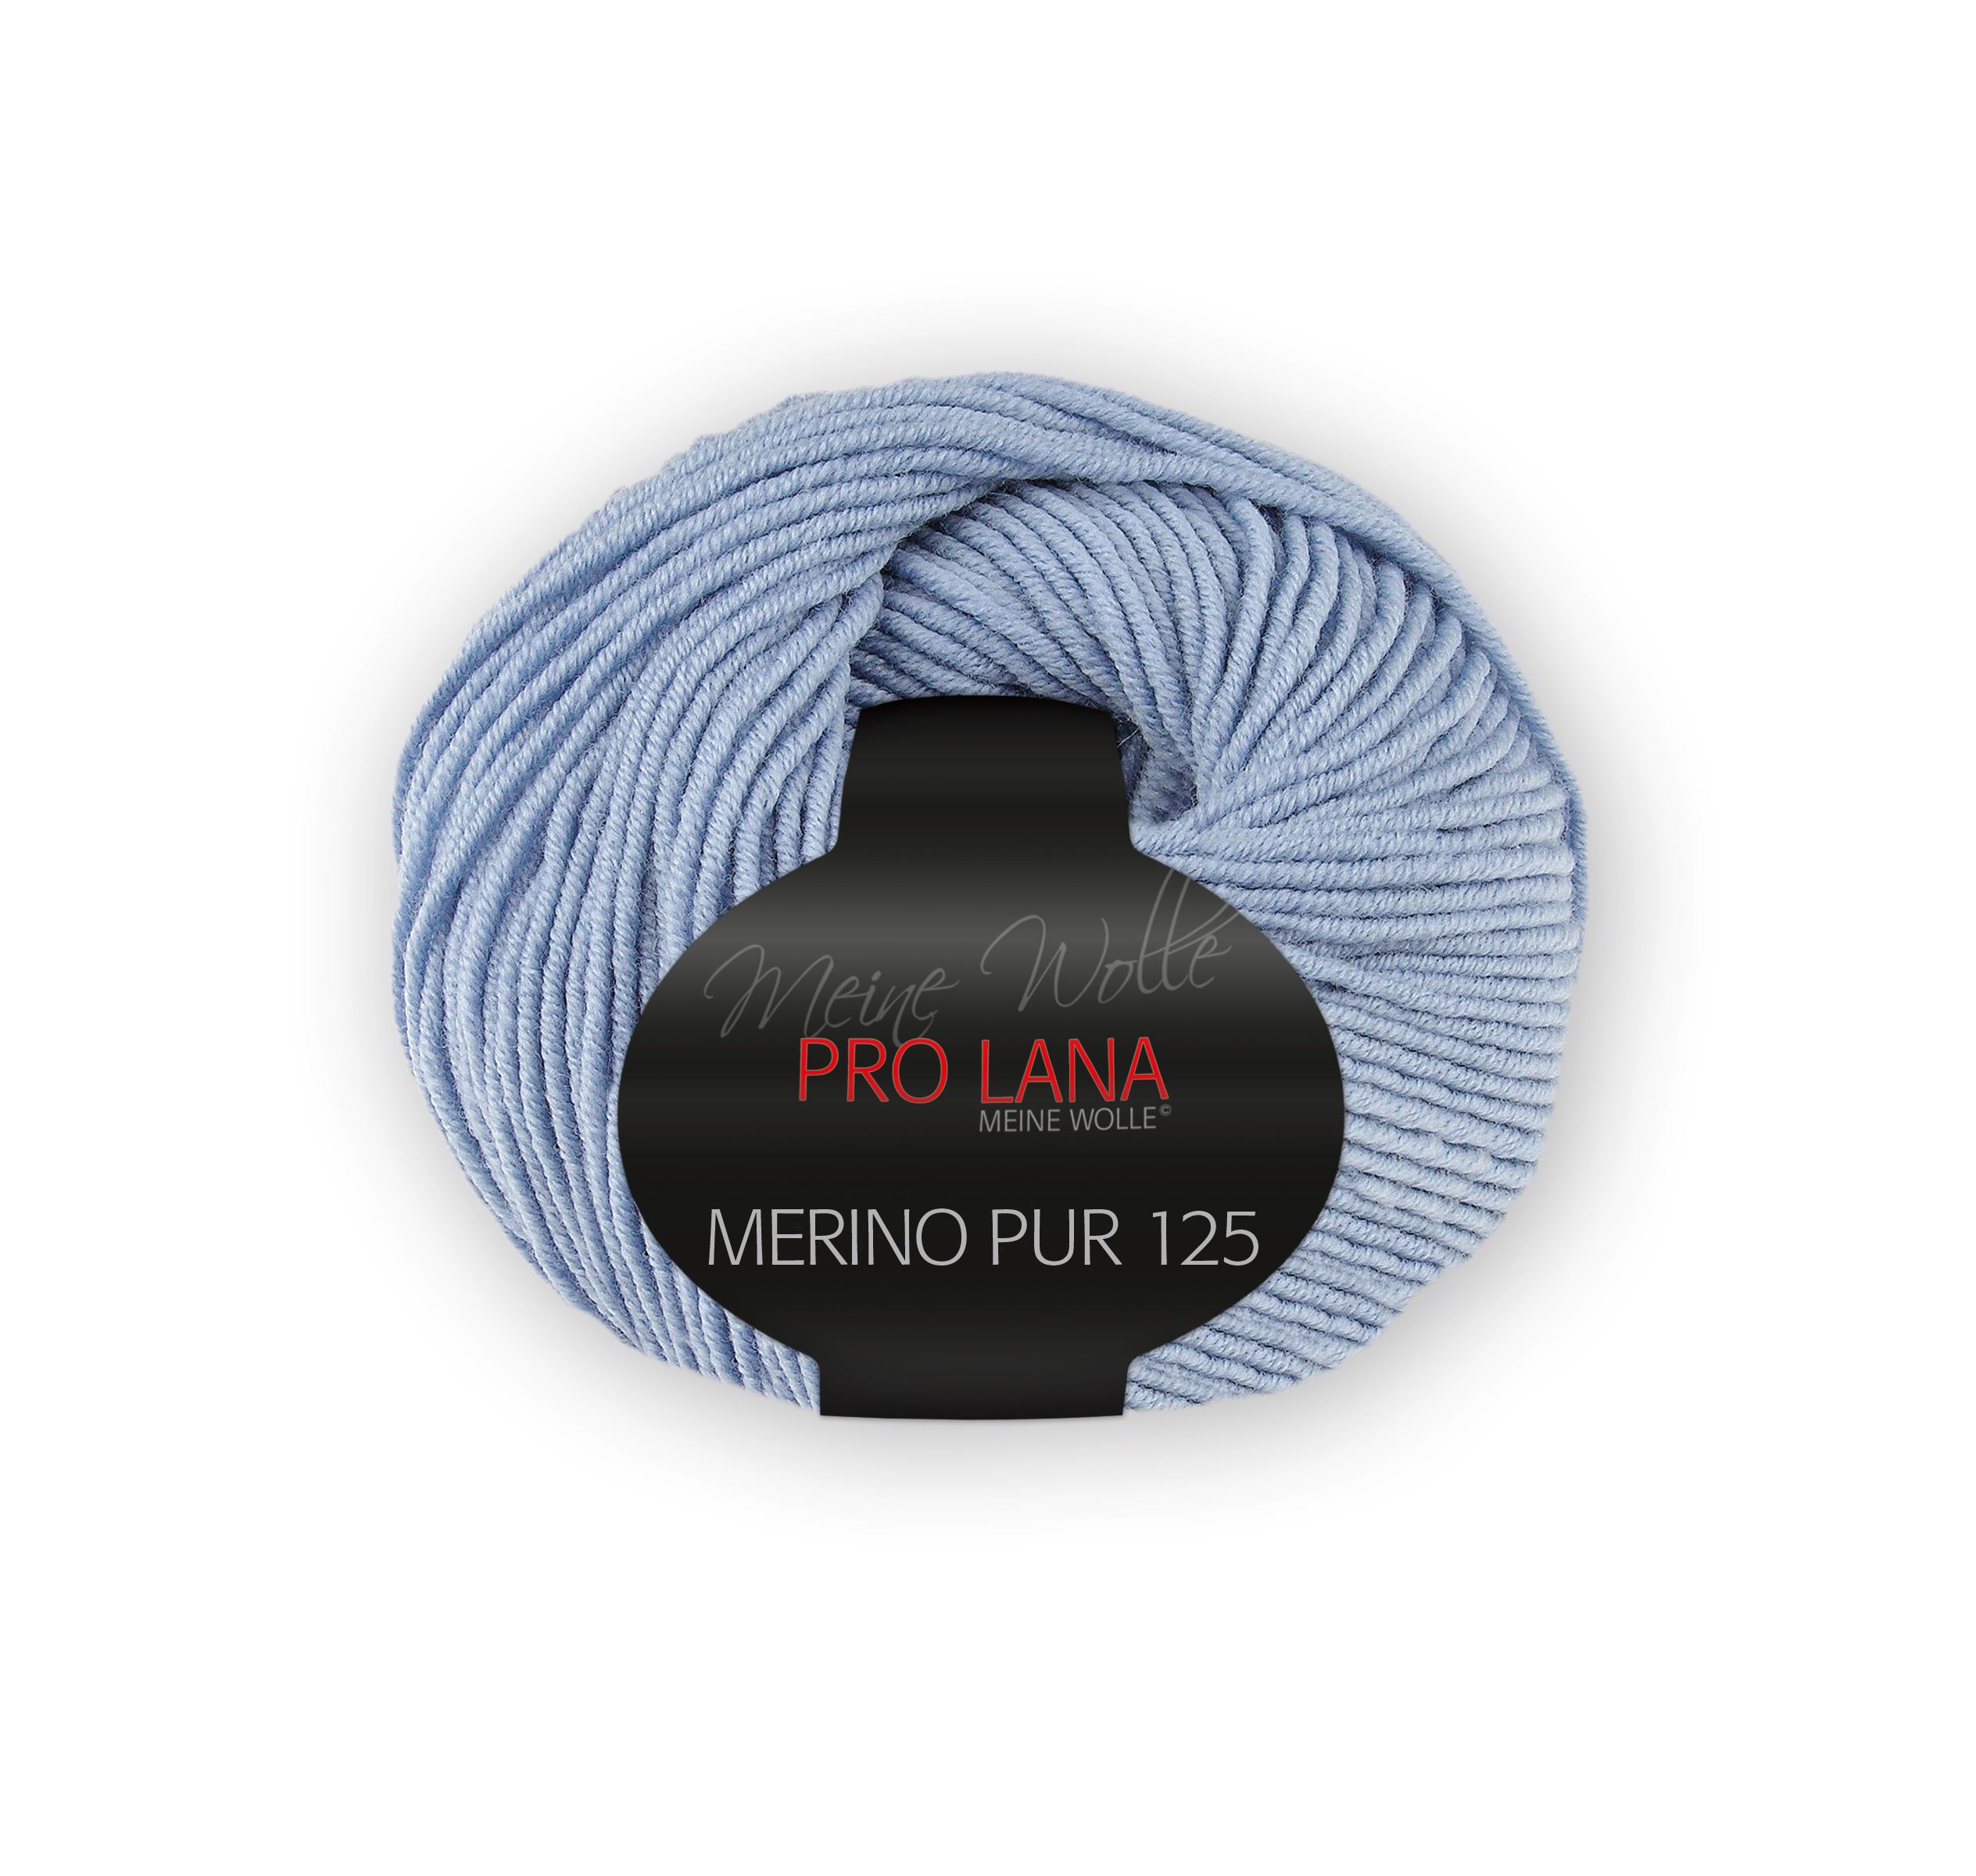 Pro Lana Merino Pur125 - Hellblau 56